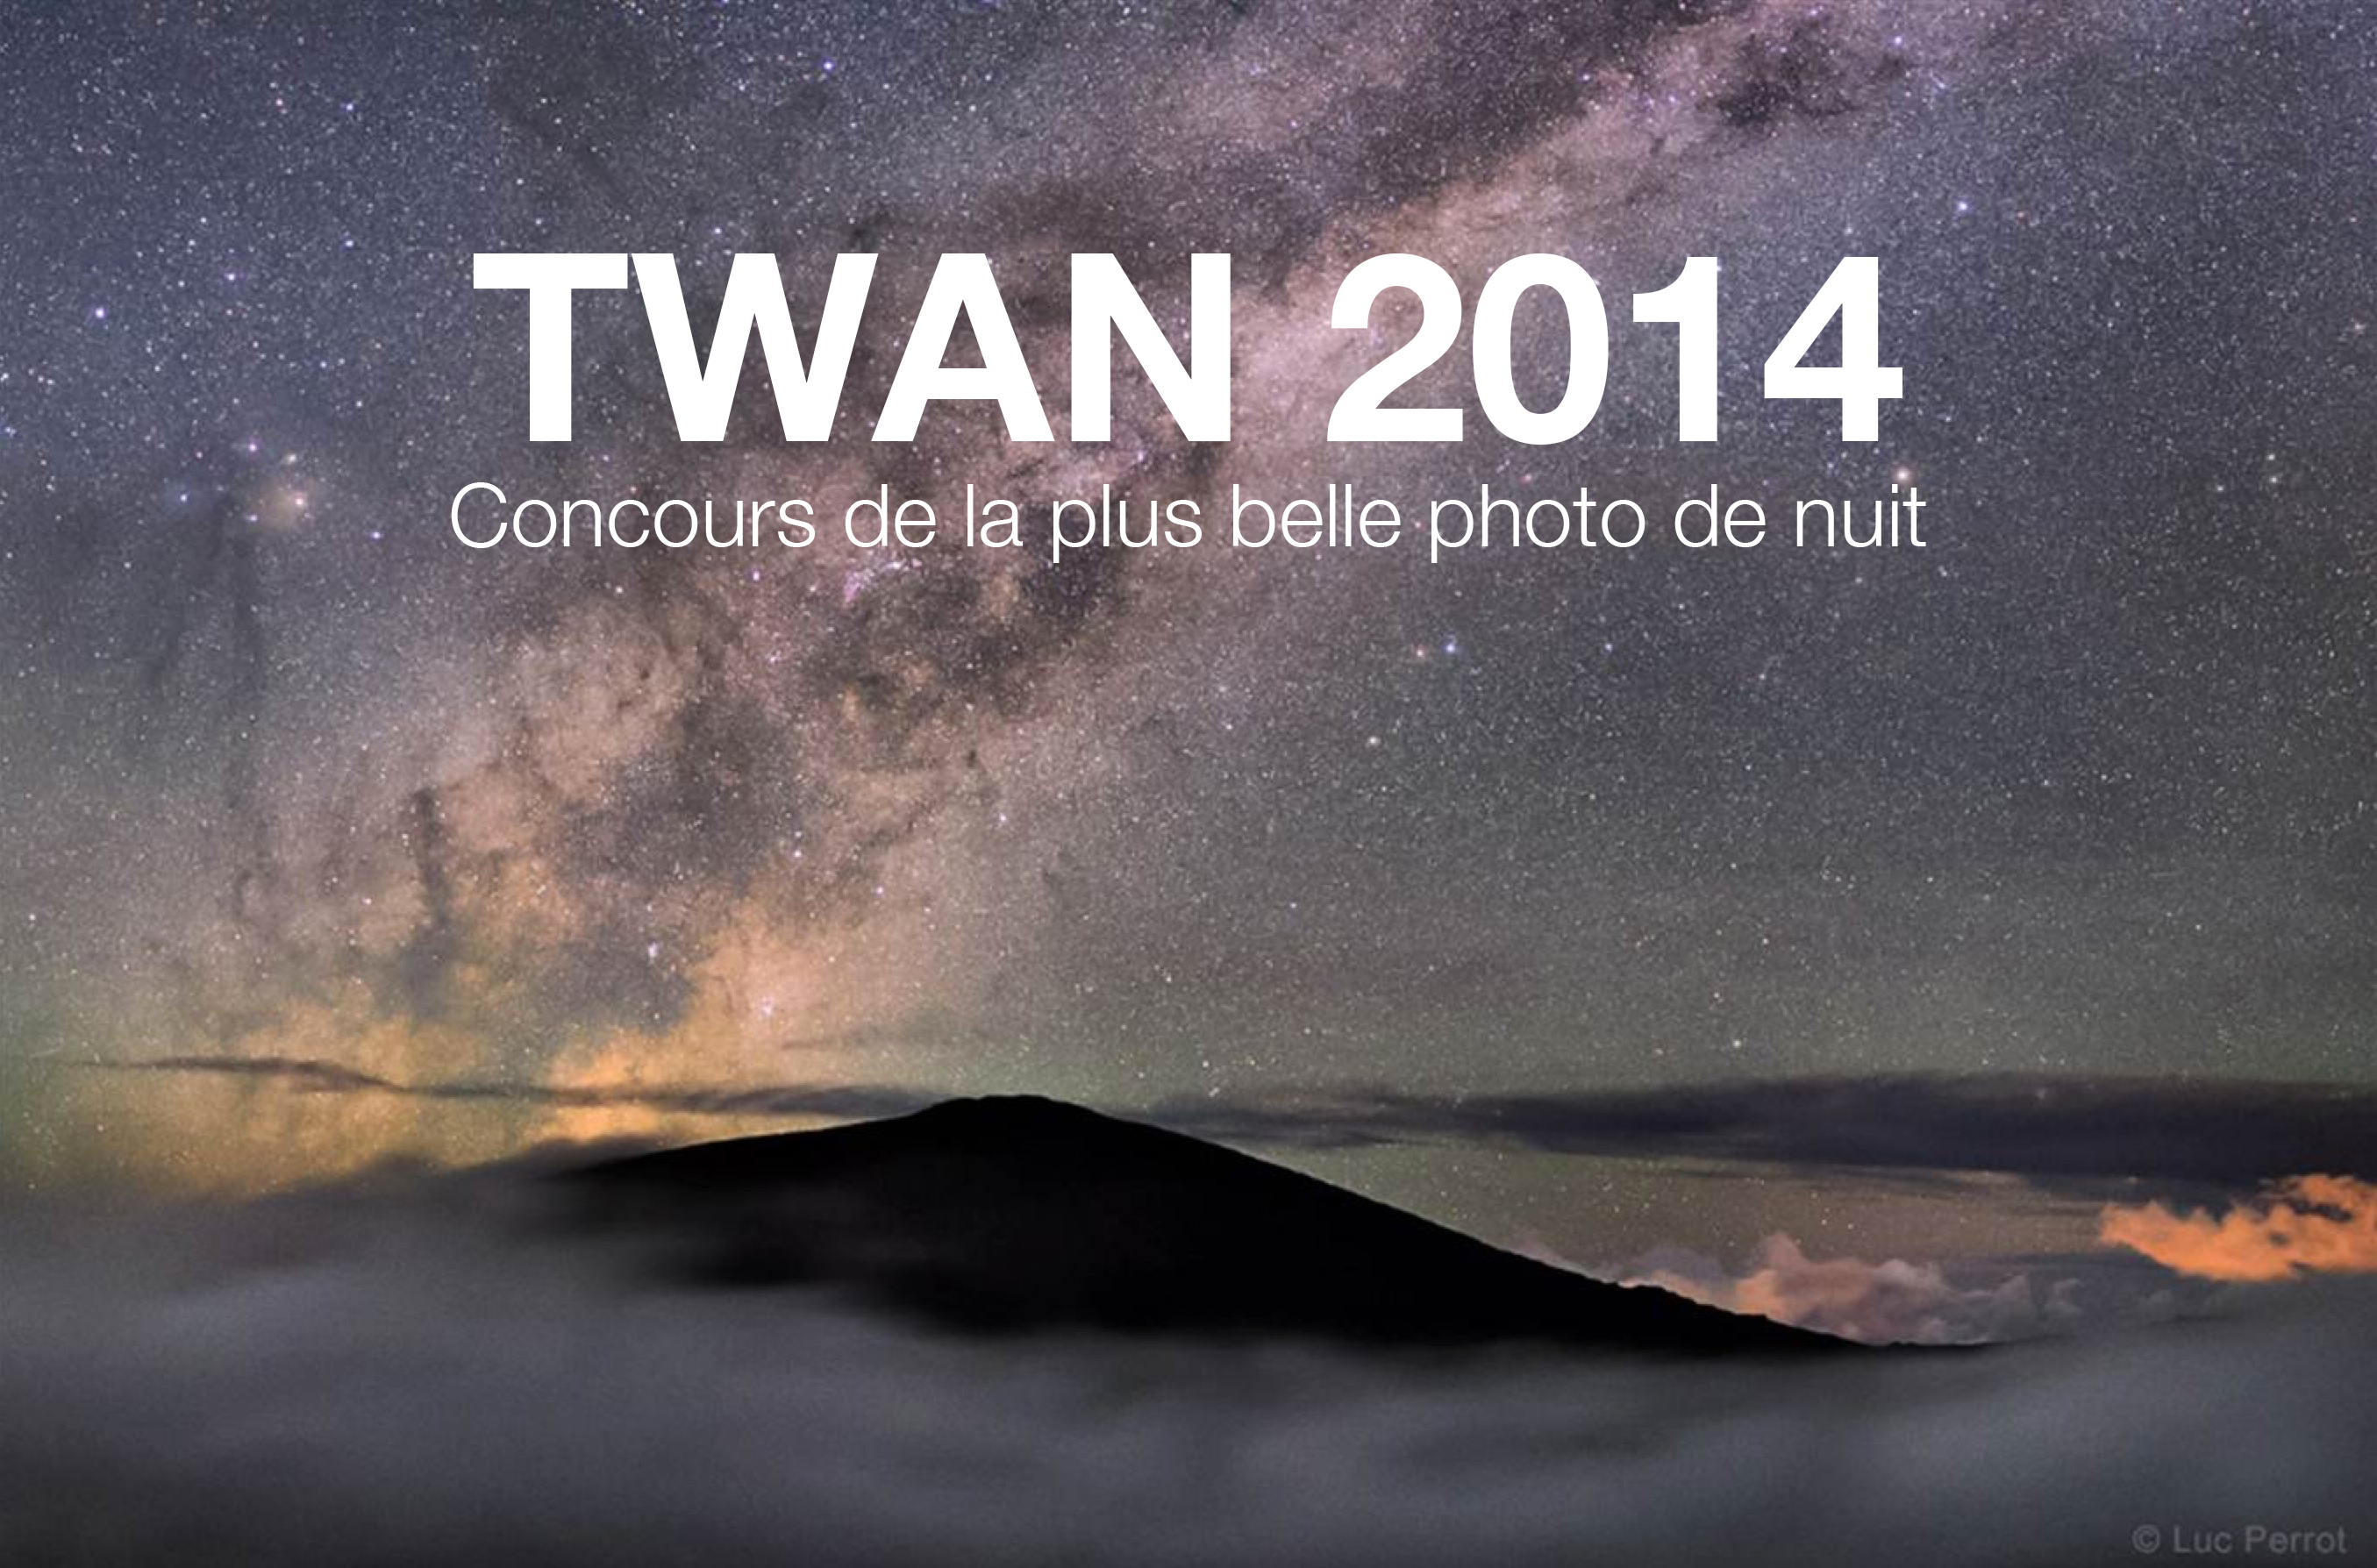 TWAN 2014 concours Photo Winners